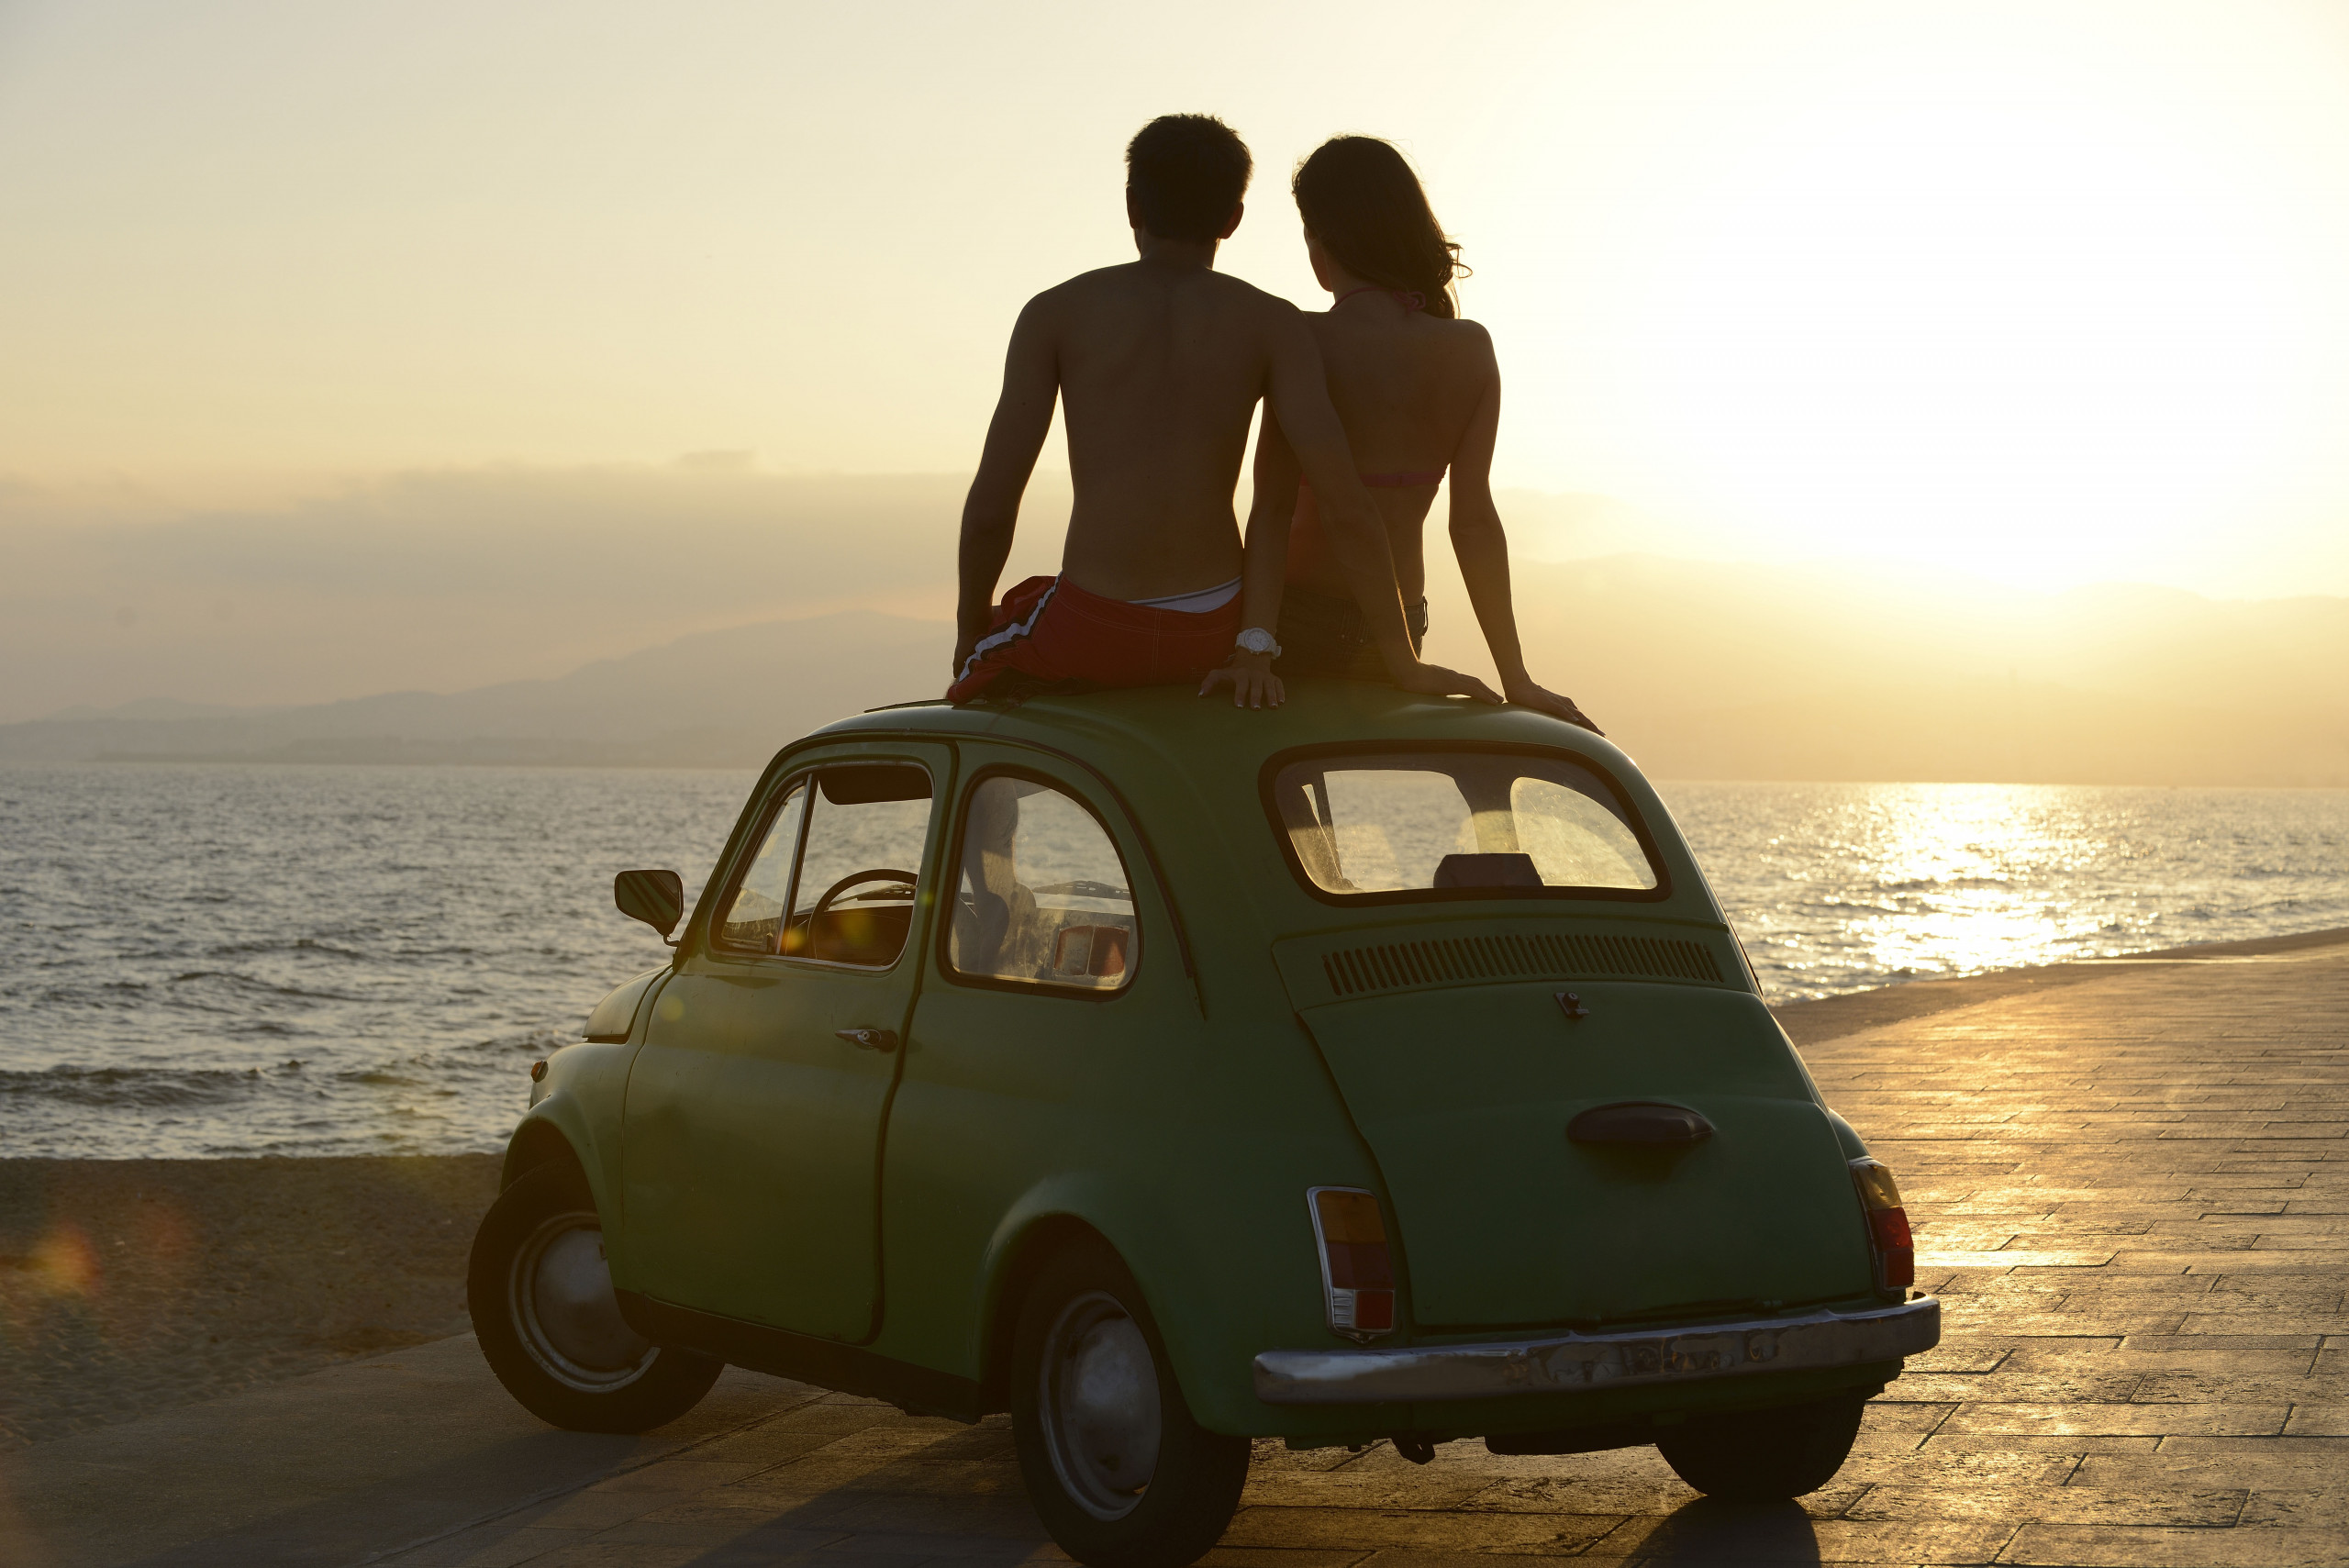 Пикап вдвоем. Путешествие на машине. Машина у моря. Пара на фоне машины. Романтика в автомобилях.